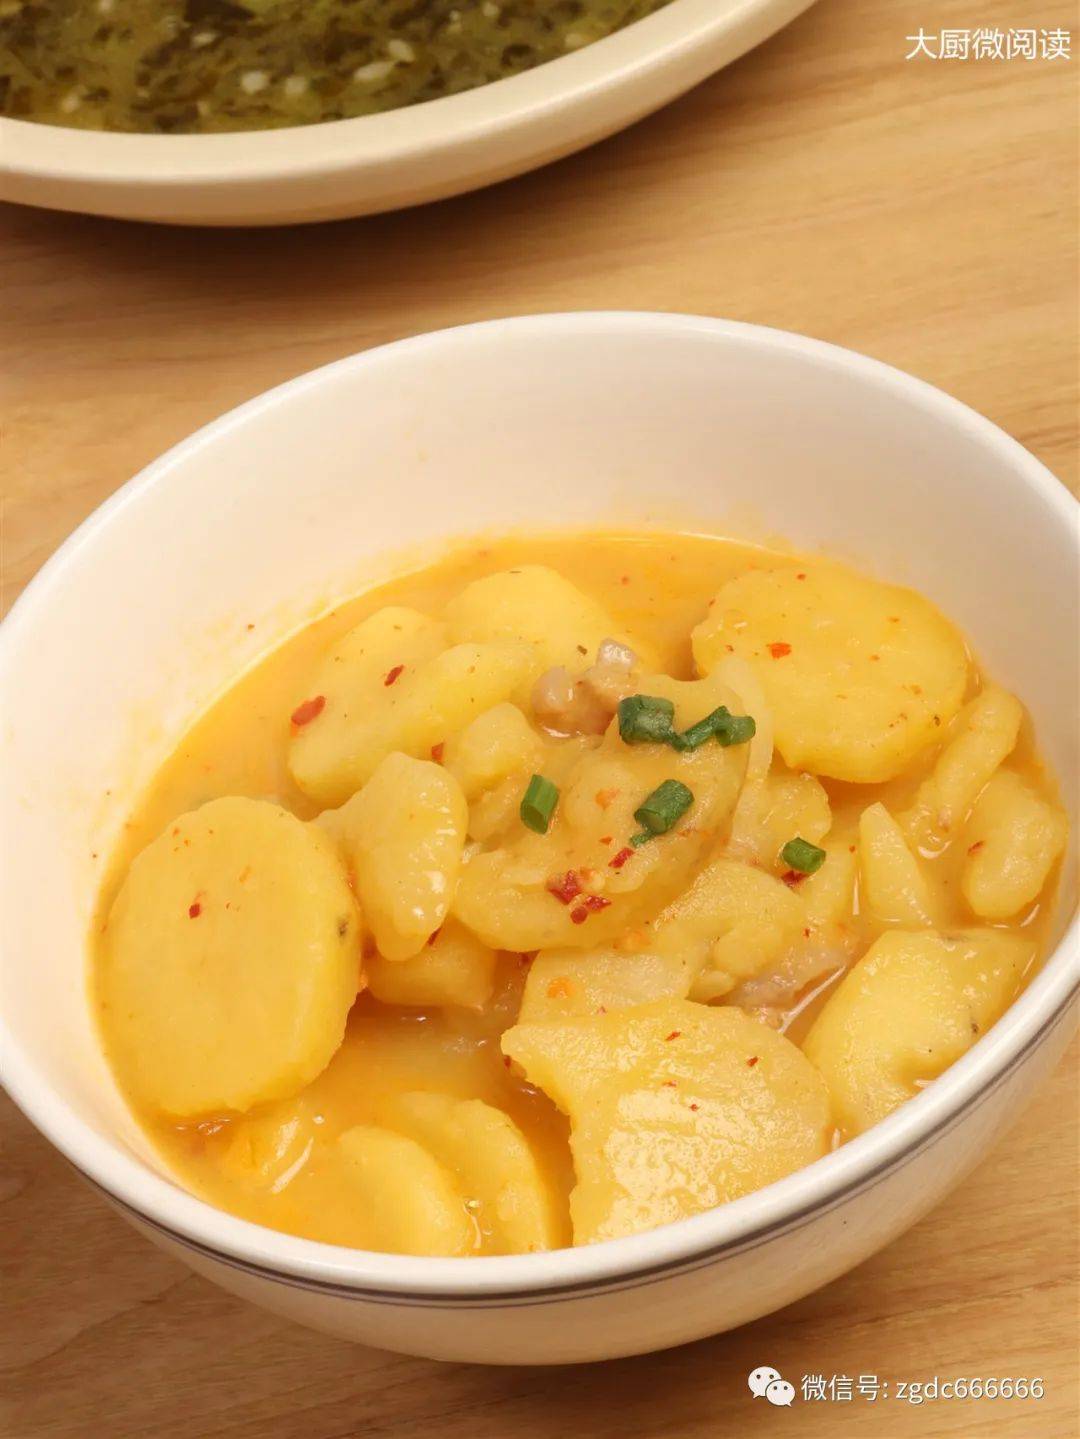 炖土豆金黄粉糯,汤汁香浓,关键是加入两种混合油!5款土豆旺菜,真香!